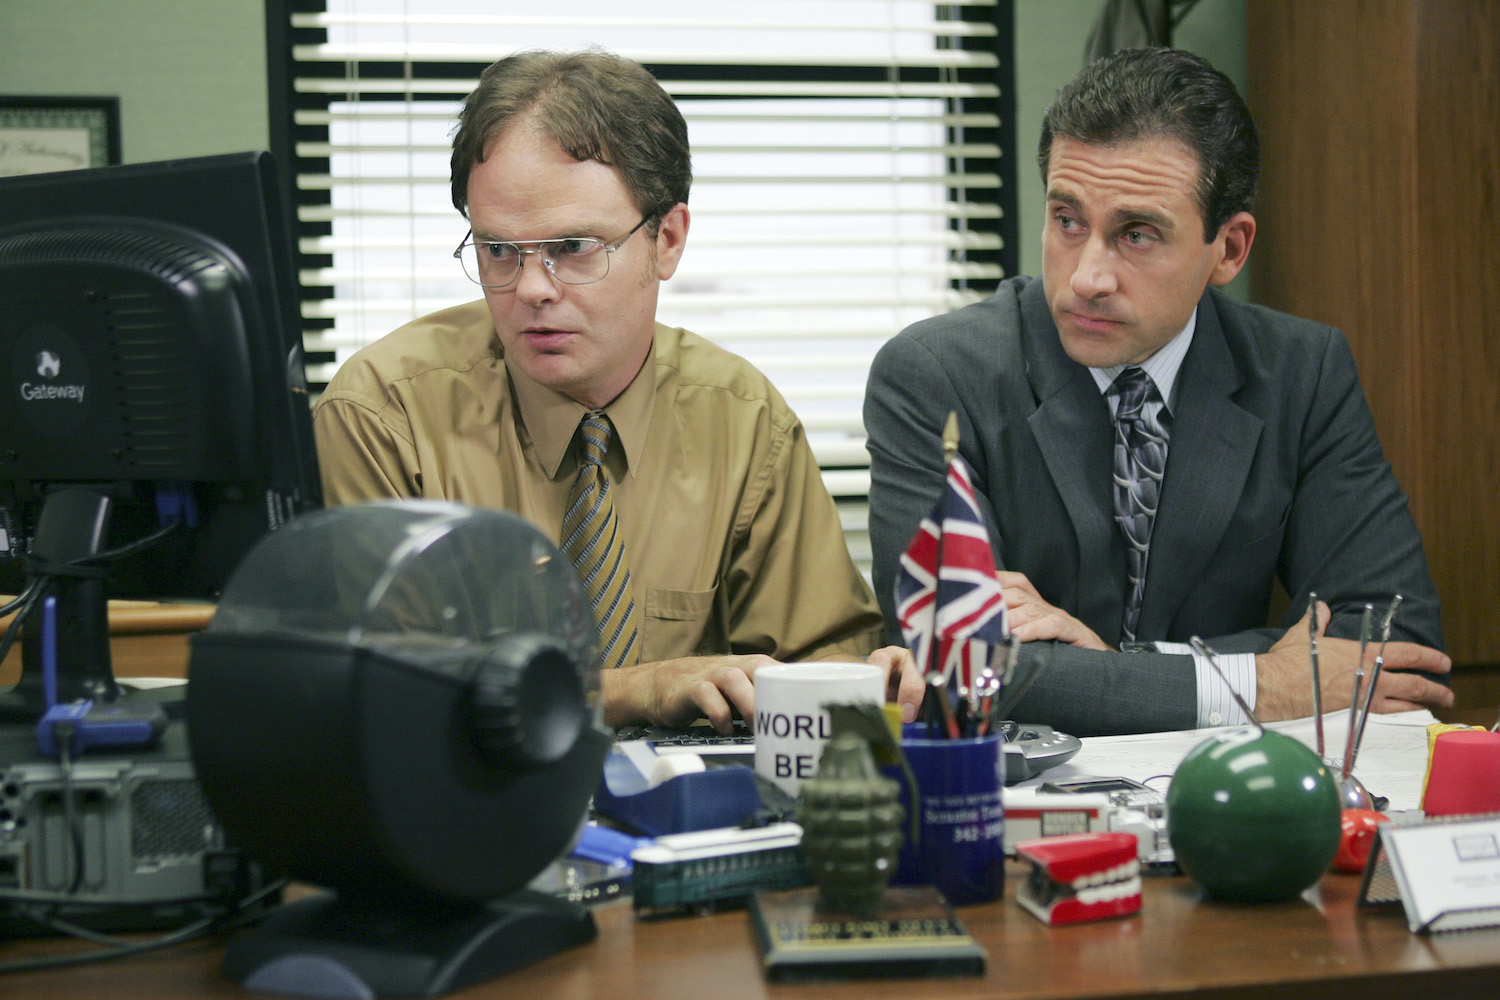 The Office: Rainn Wilson as Dwight Schrute and Steve Carell as Michael Scott